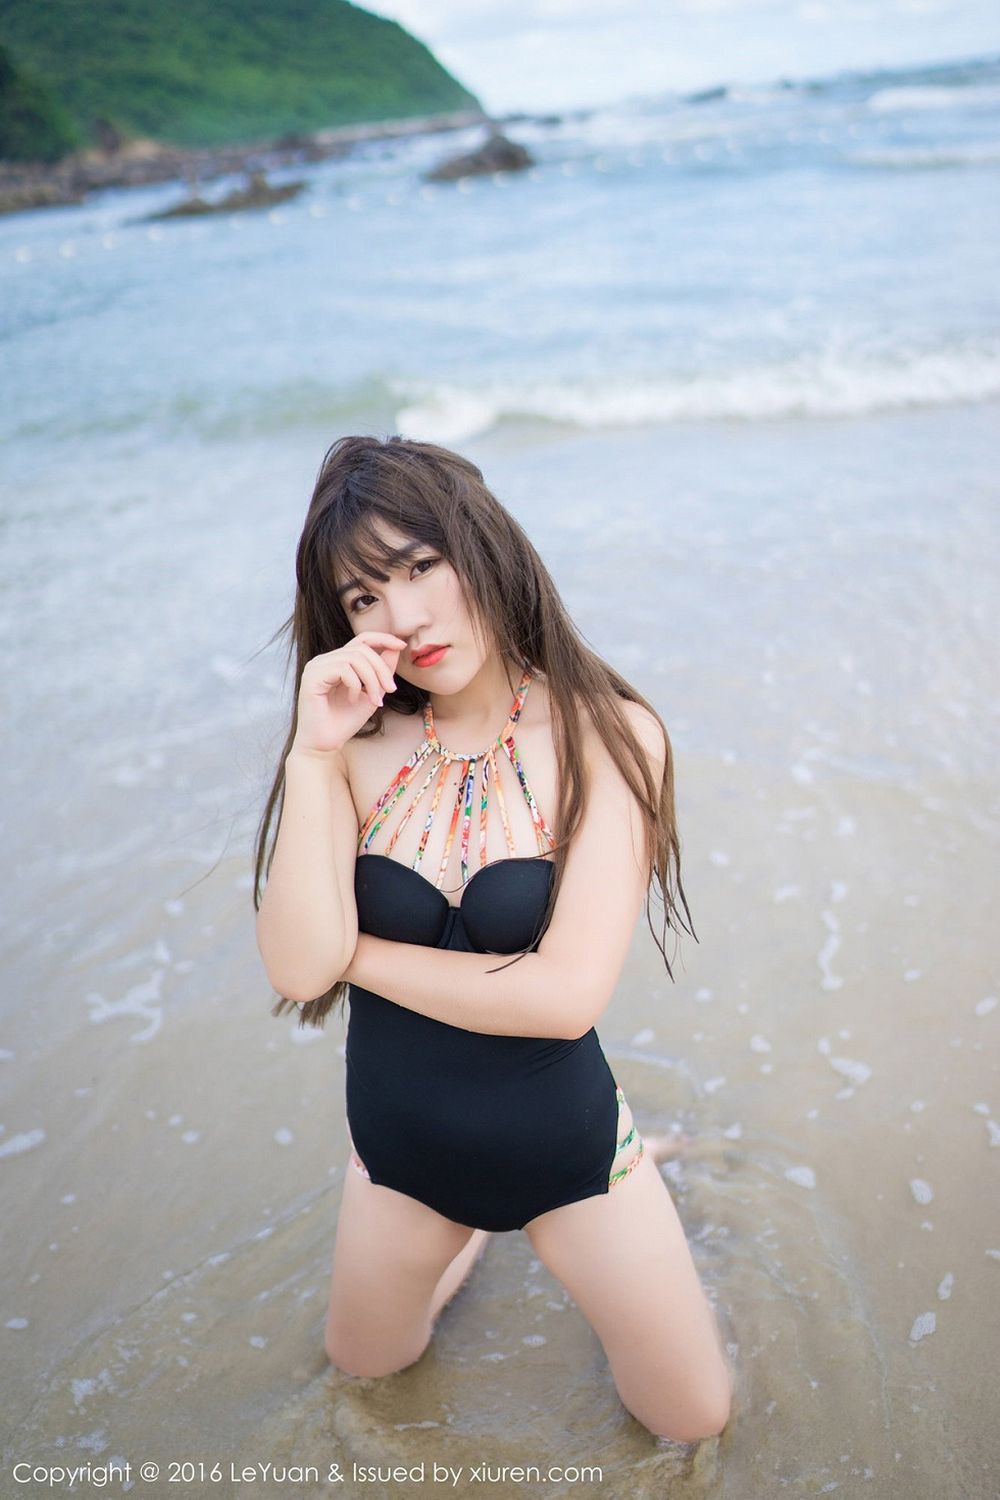 新人模特冷不丁海边沙滩黑长直泳装系列首套写真